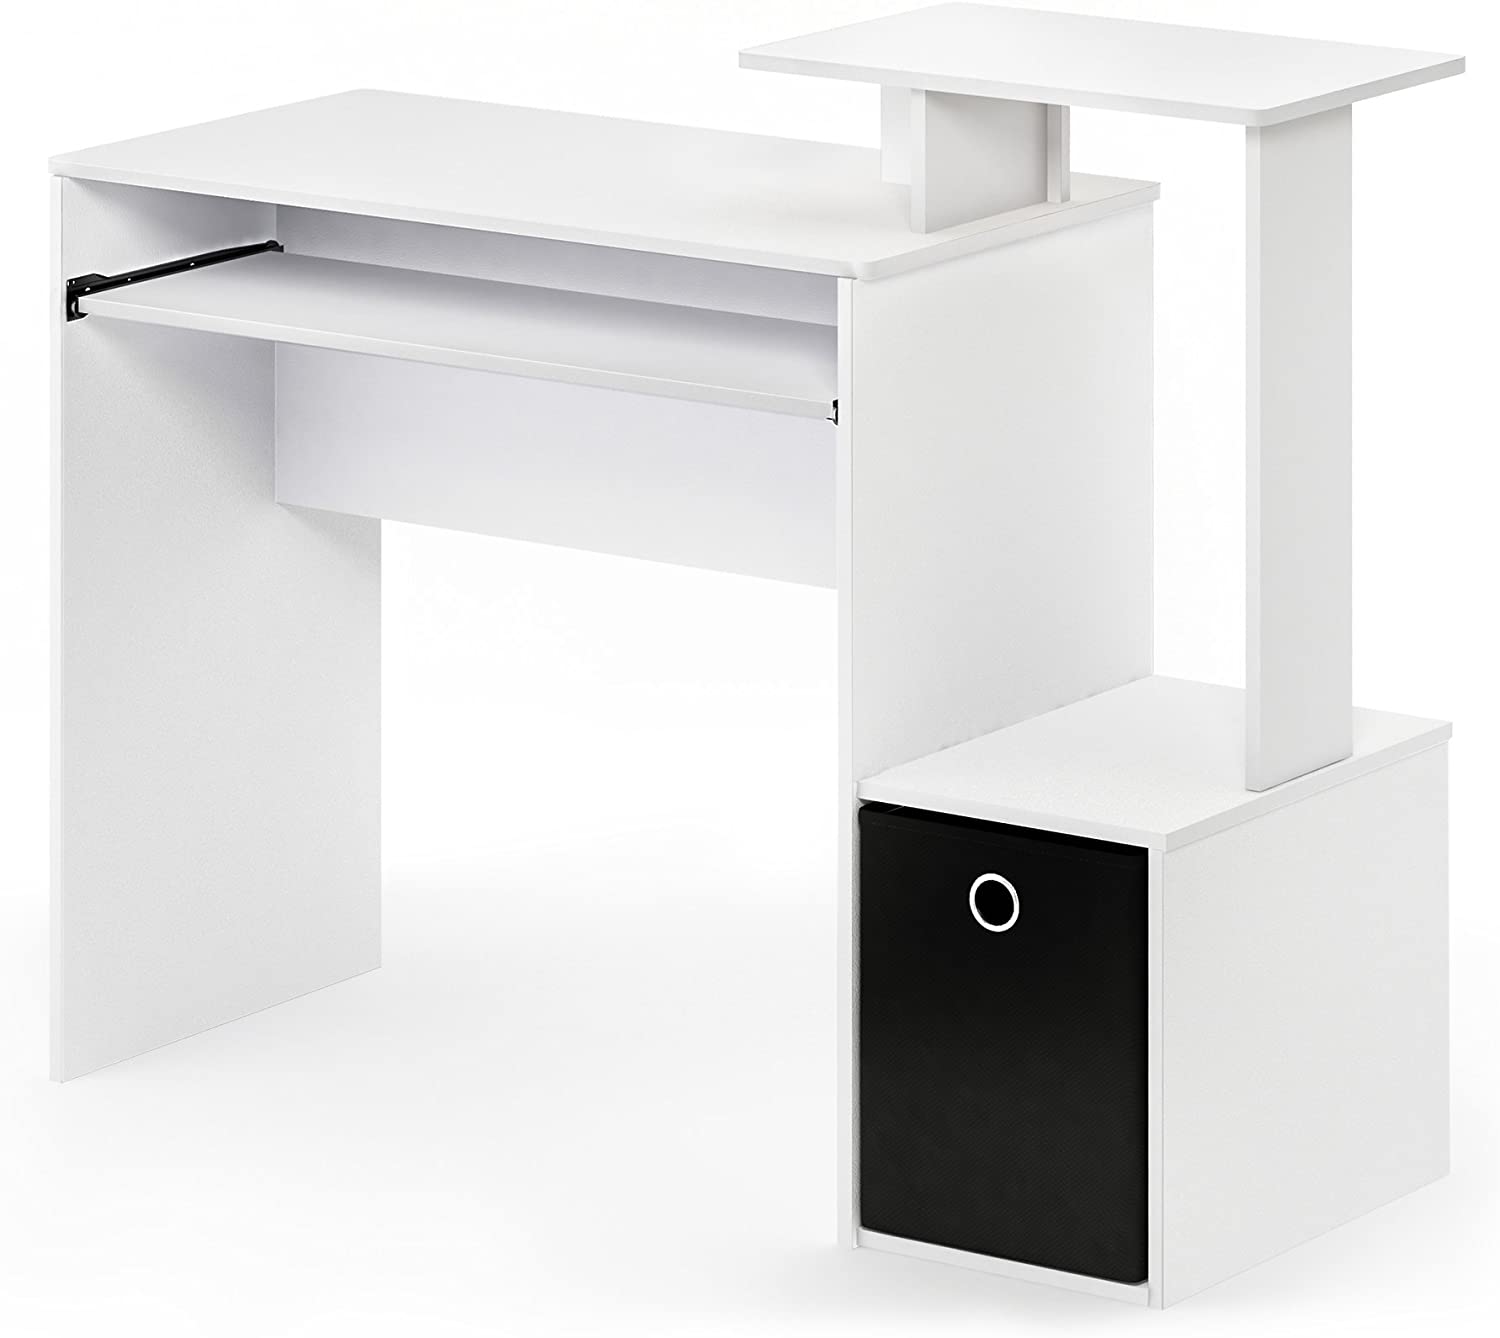 FURINNO Econ Multipurpose Home Office Computer Writing Desk, White/Black